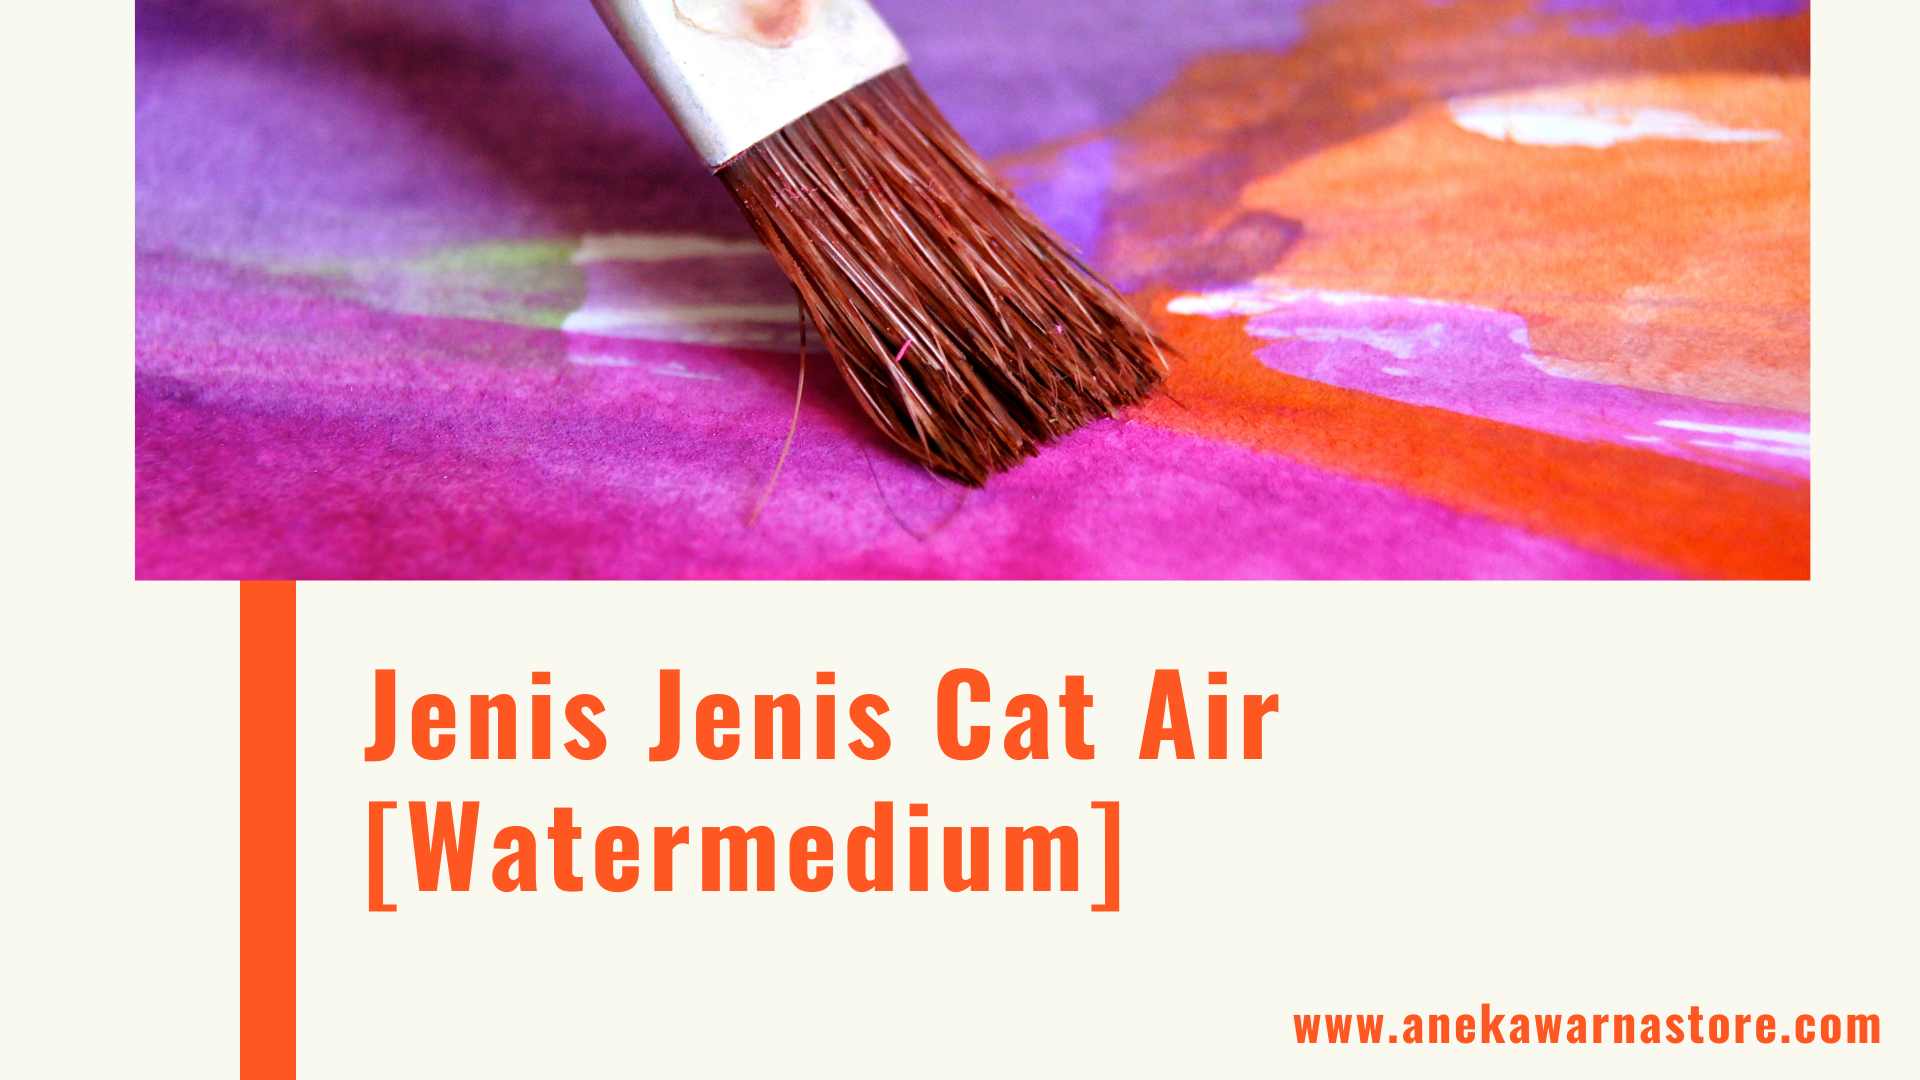 Jenis Jenis Cat Air Watermediums Aneka Warna Store